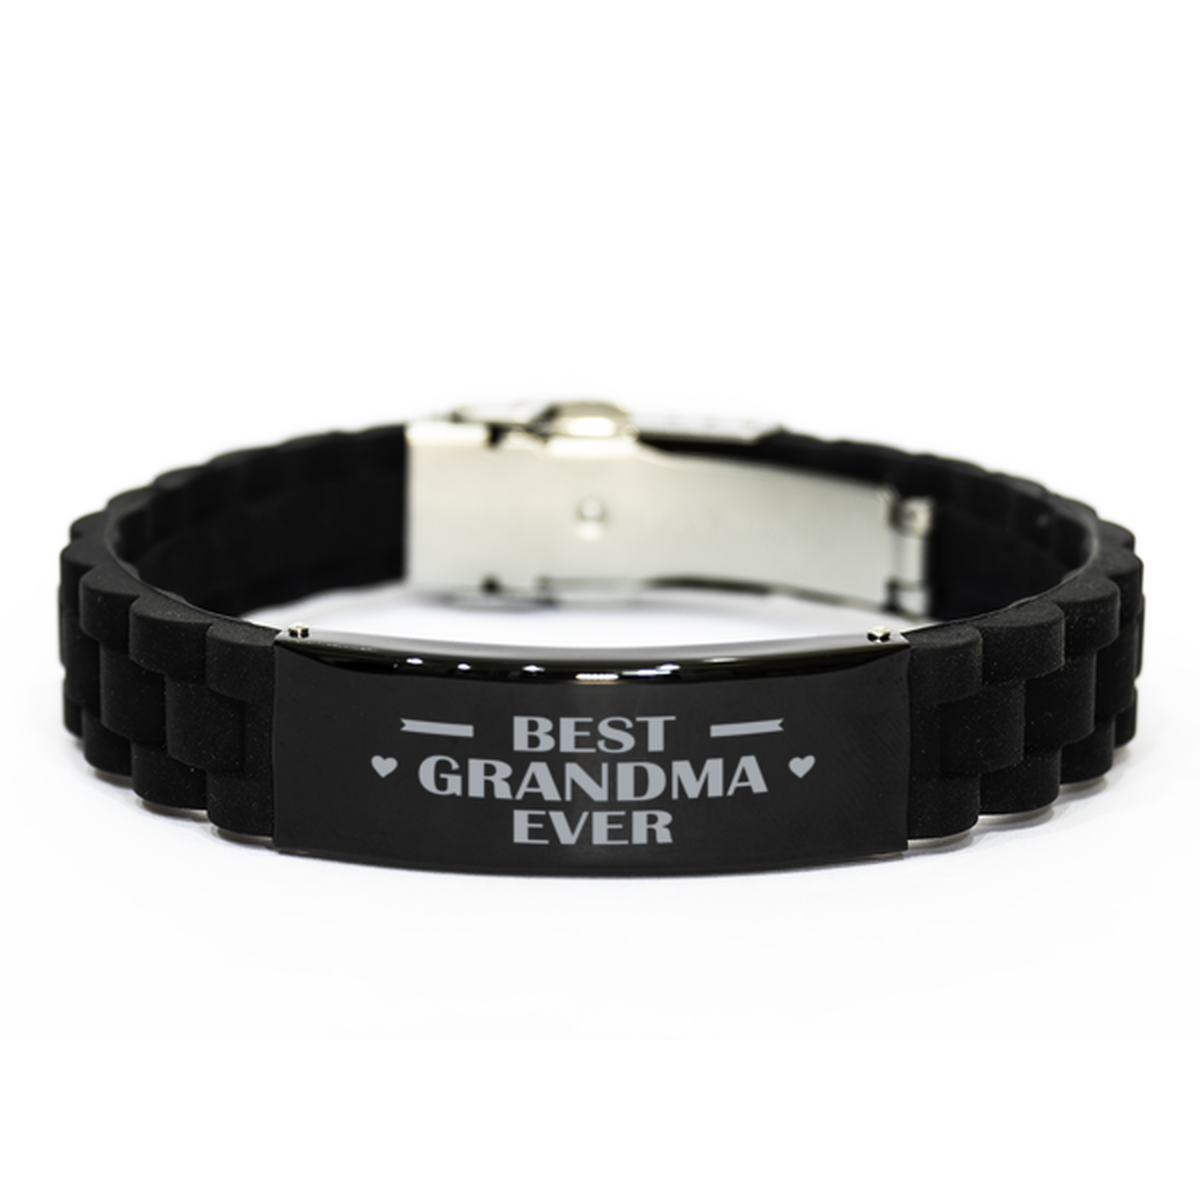 Best Grandma Ever Grandma Gifts, Funny Black Engraved Bracelet For Grandma, Family Gifts For Women